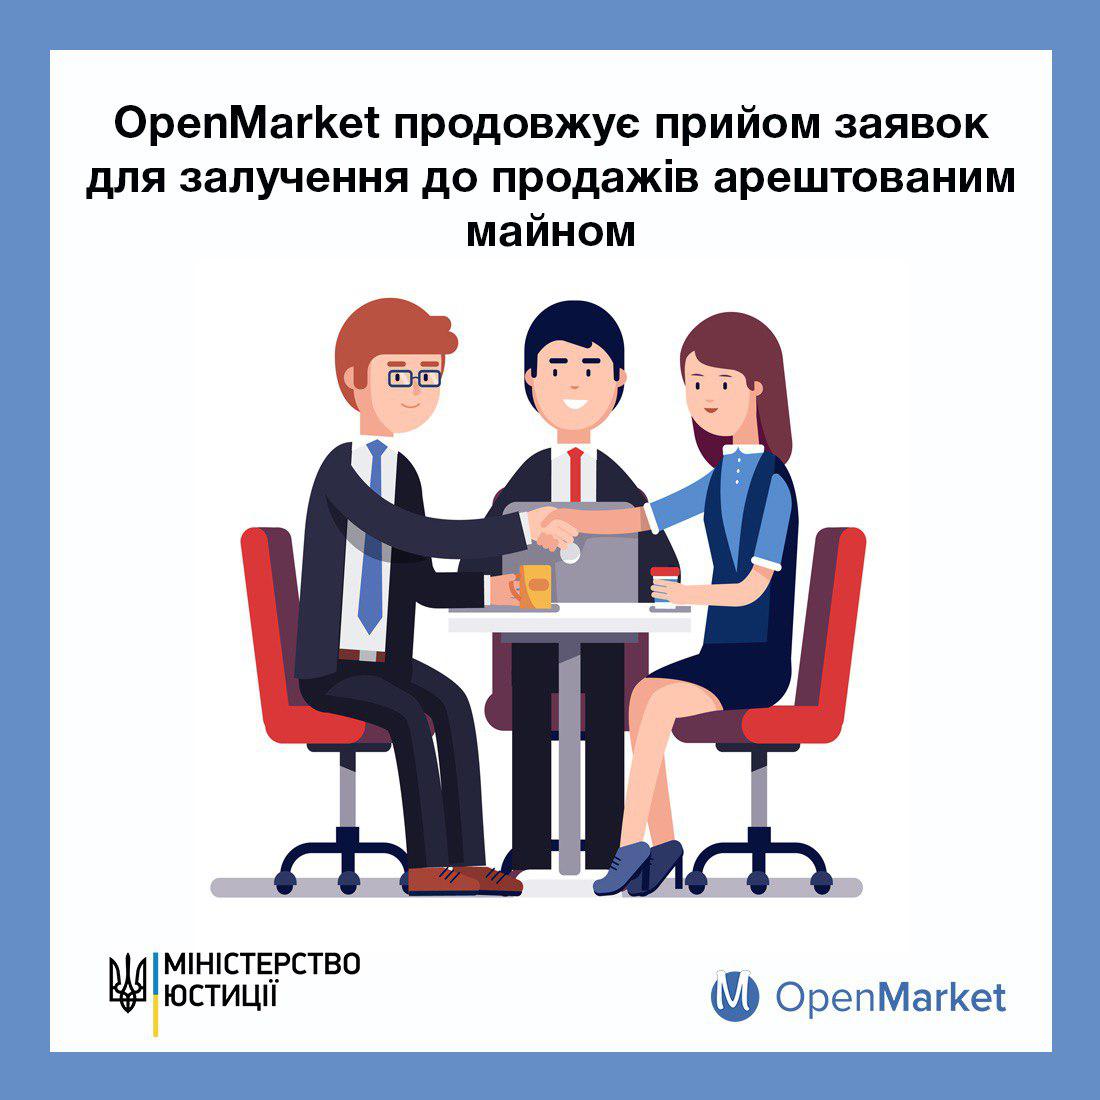 OpenMarket продовжує прийом заявок для залучення до продажів арештованим майном - Фото